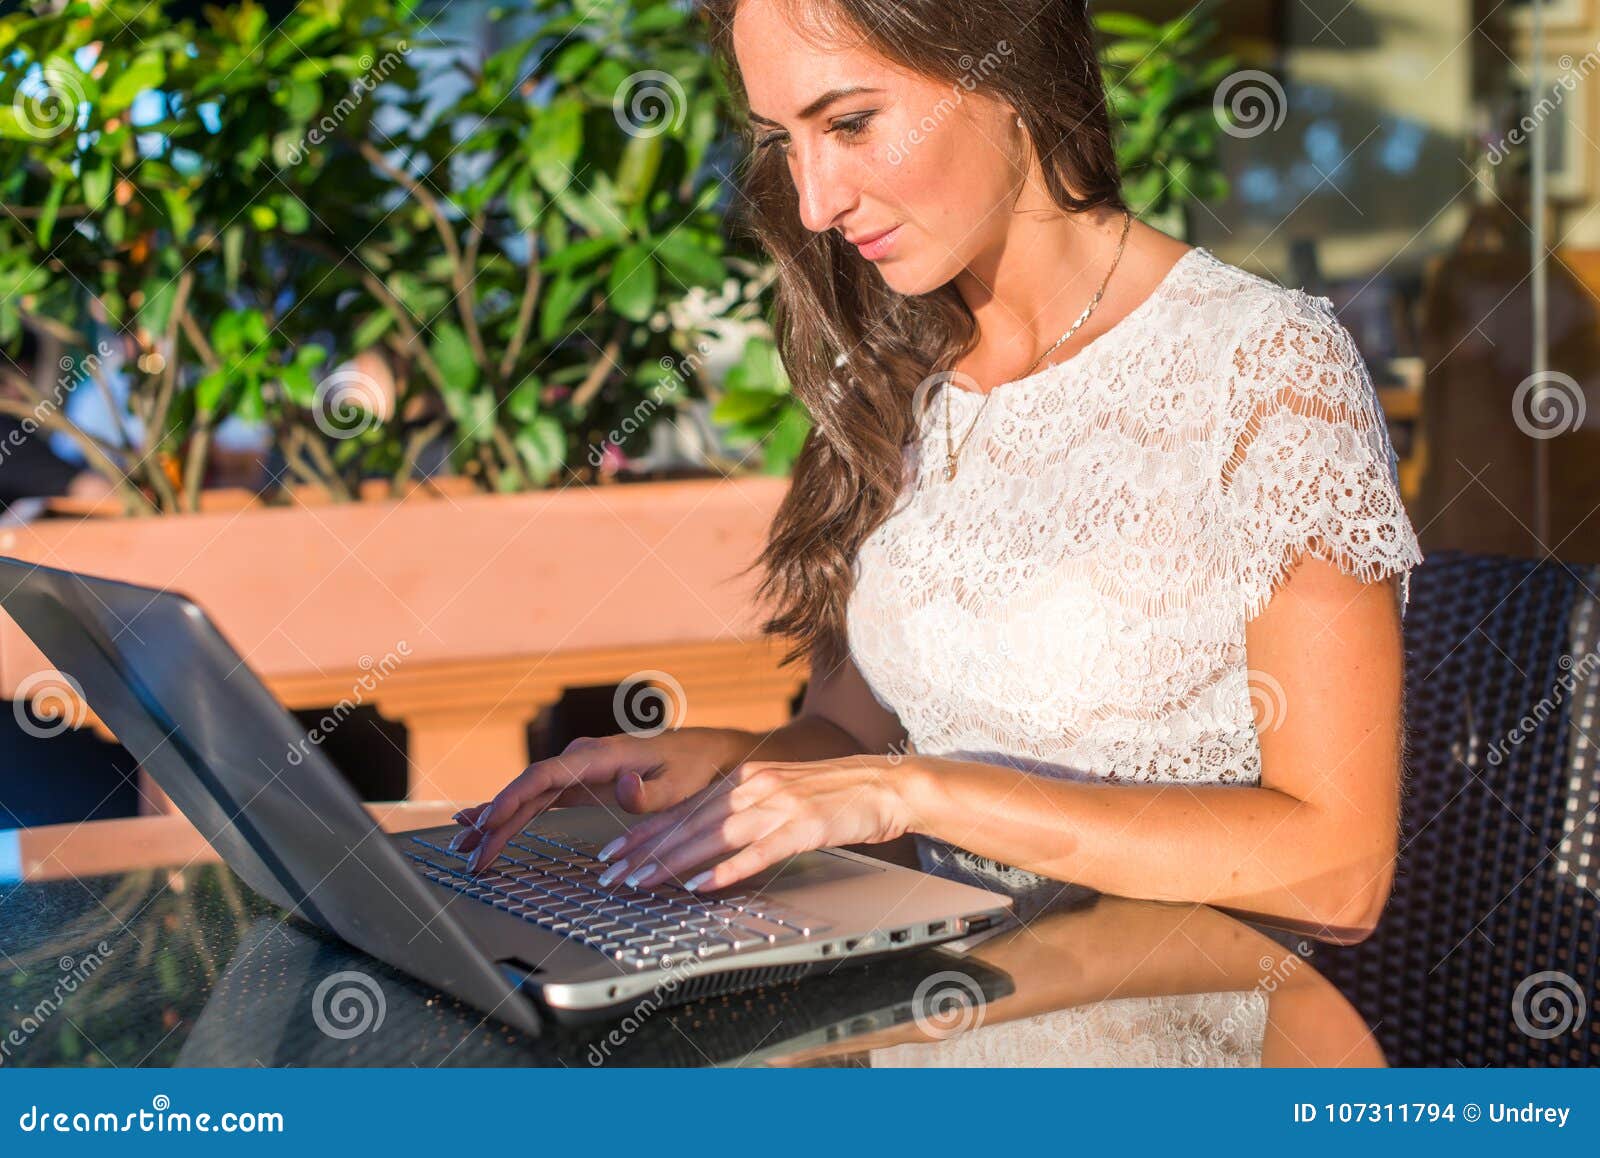 Blogger sorridente grazioso facendo uso del computer portatile per scrivere i blog mentre sedendosi al caffè all'aperto il giorno soleggiato